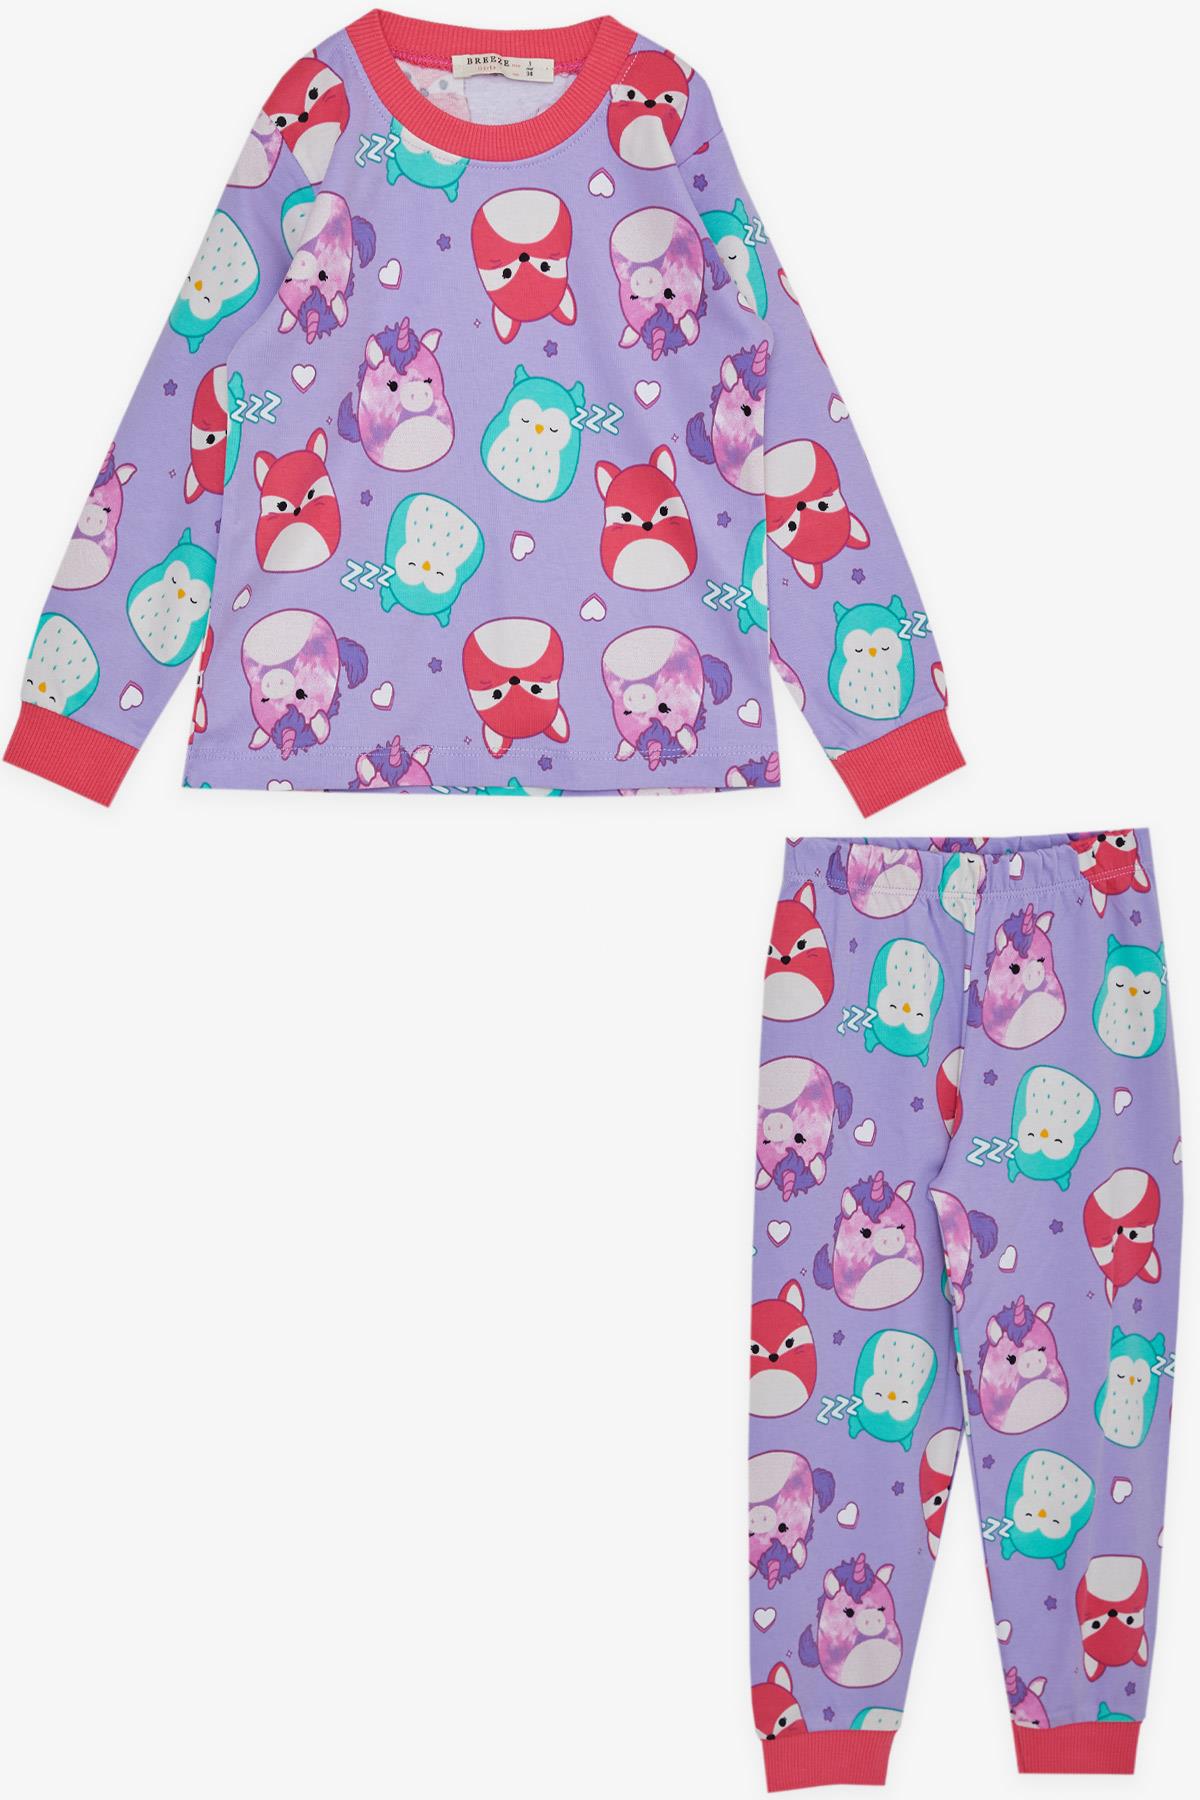 Kız Çocuk Pijama Takımı Sevimli Hayvancıklar Desenli Lila 1-4 Yaş -  Eğlenceli Kız Çocuk Pijamaları| Breeze